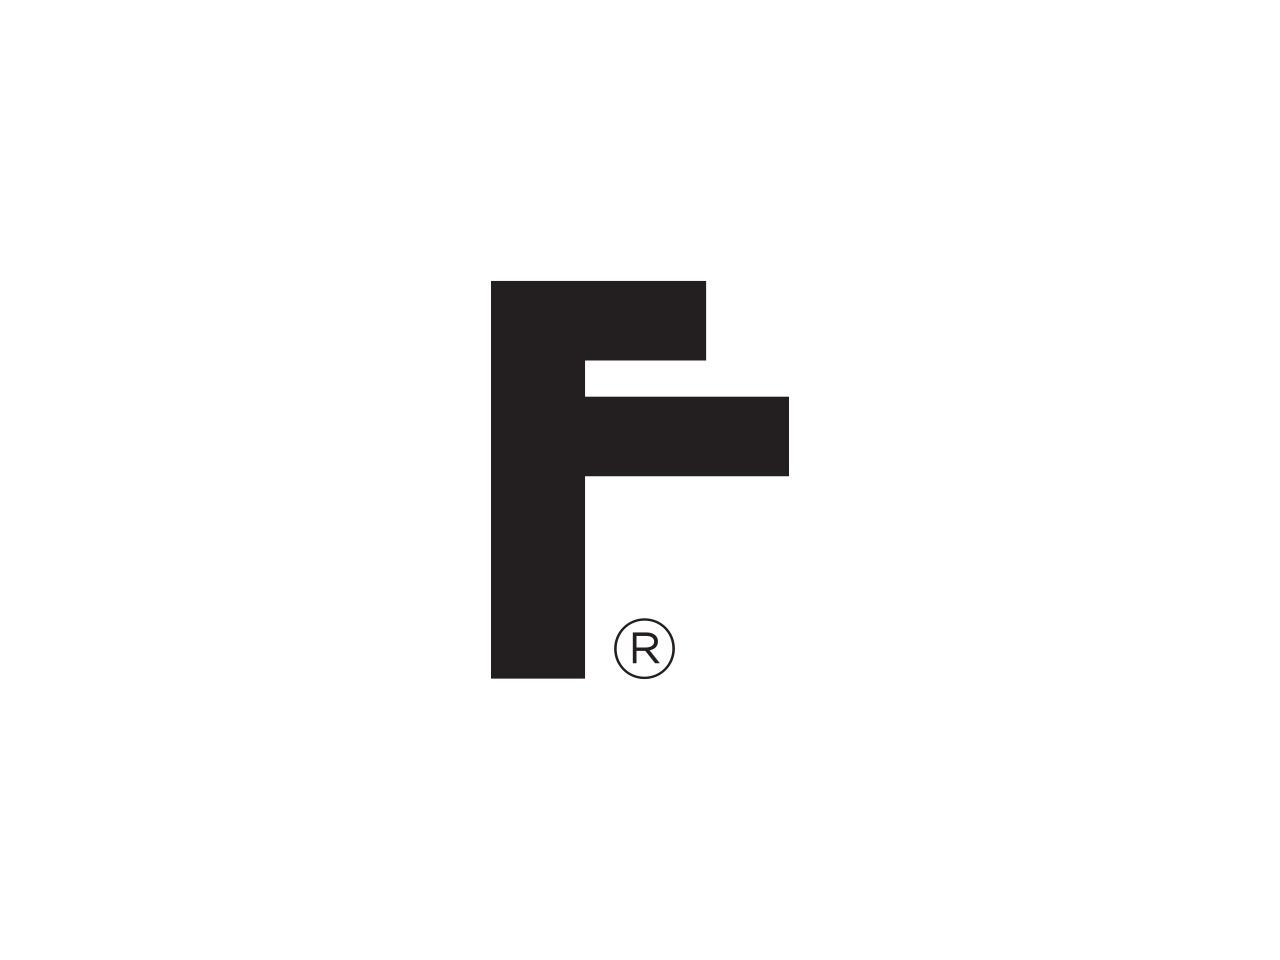 Il futuro inizia con una F: il nuovo marchio Frattini